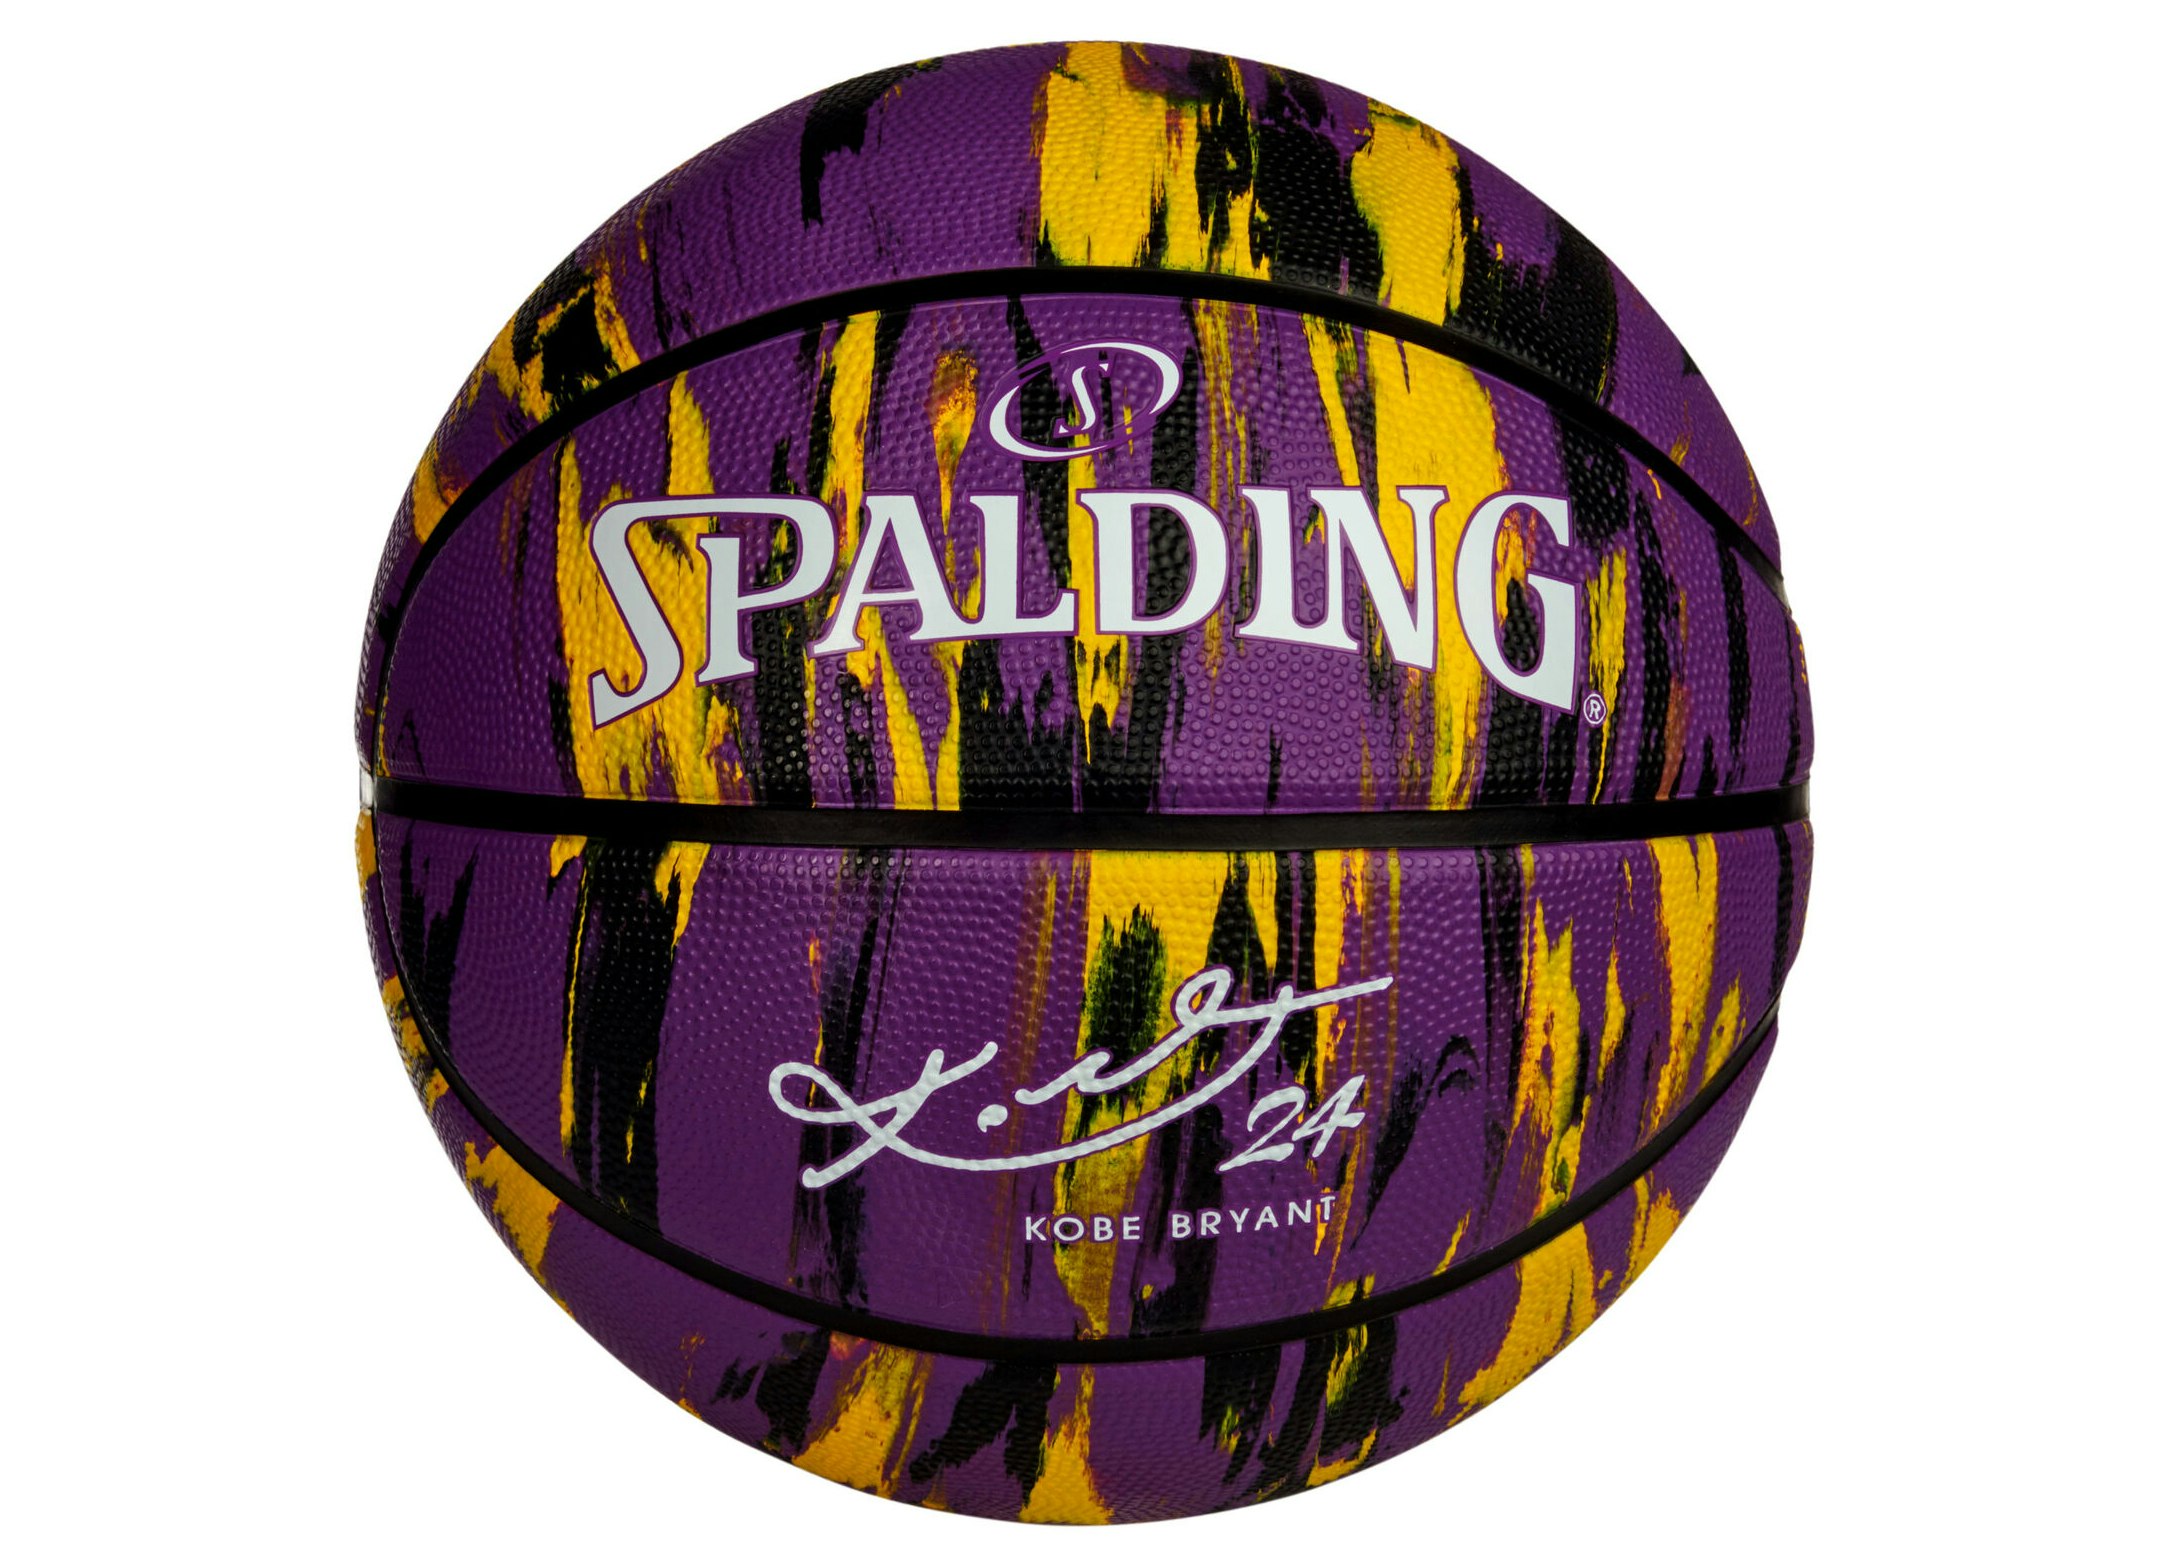 Spalding Kobe Bryant 24 Ball 84132Z ball Violet Unisex